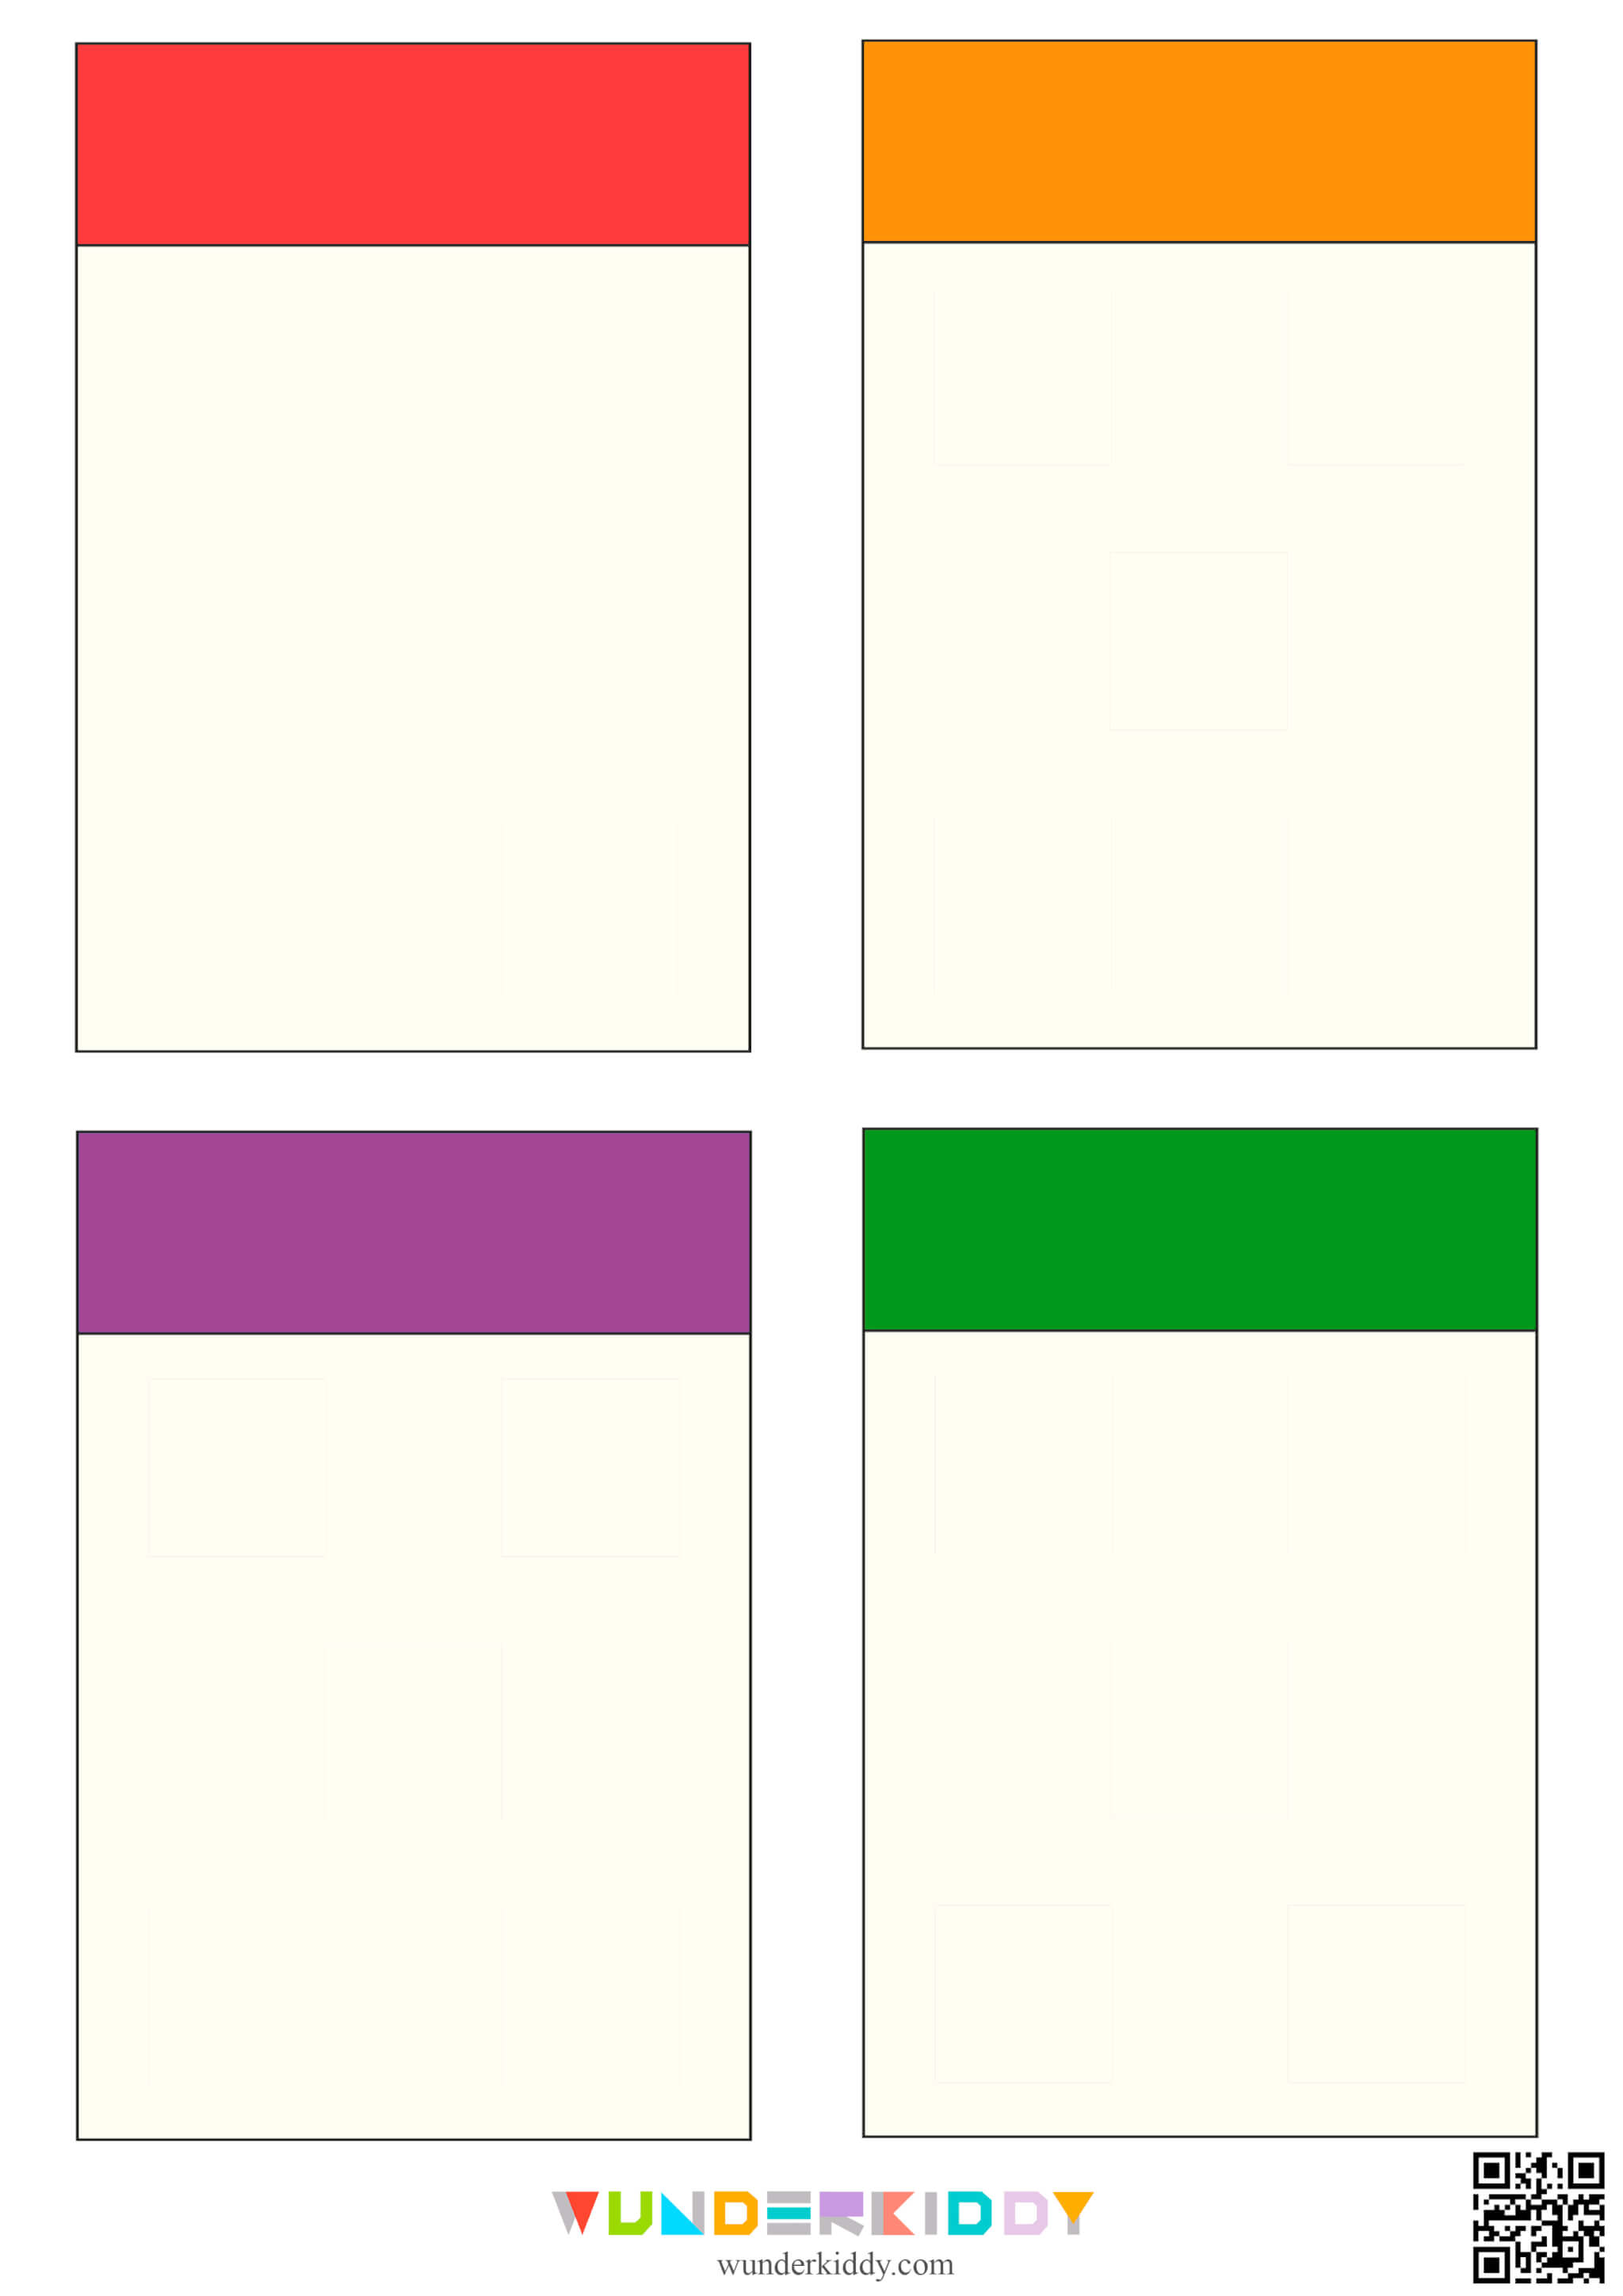 Color Sorting Worksheet for Kids - Image 3